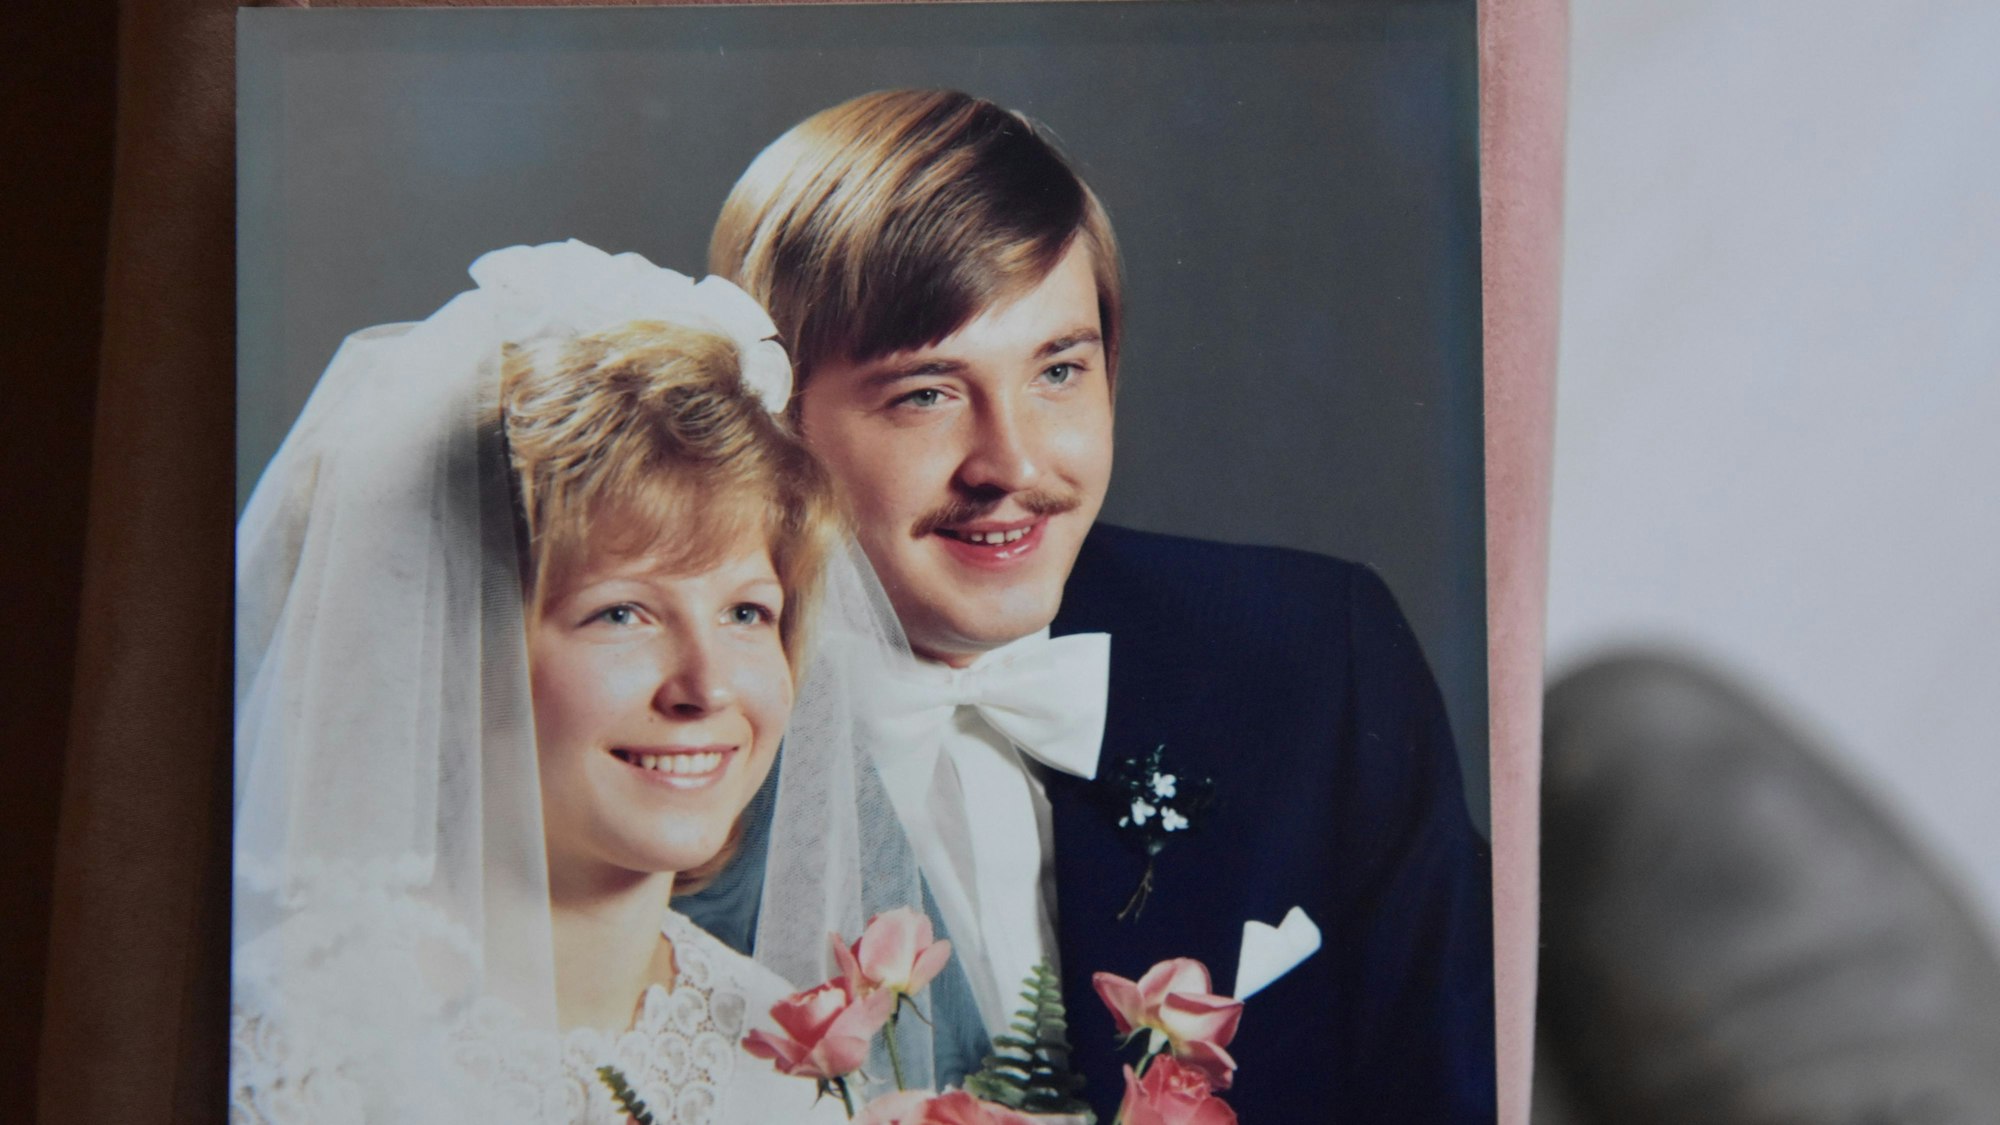 Das Jubelpaar im Porträt auf seiner Hochzeit.